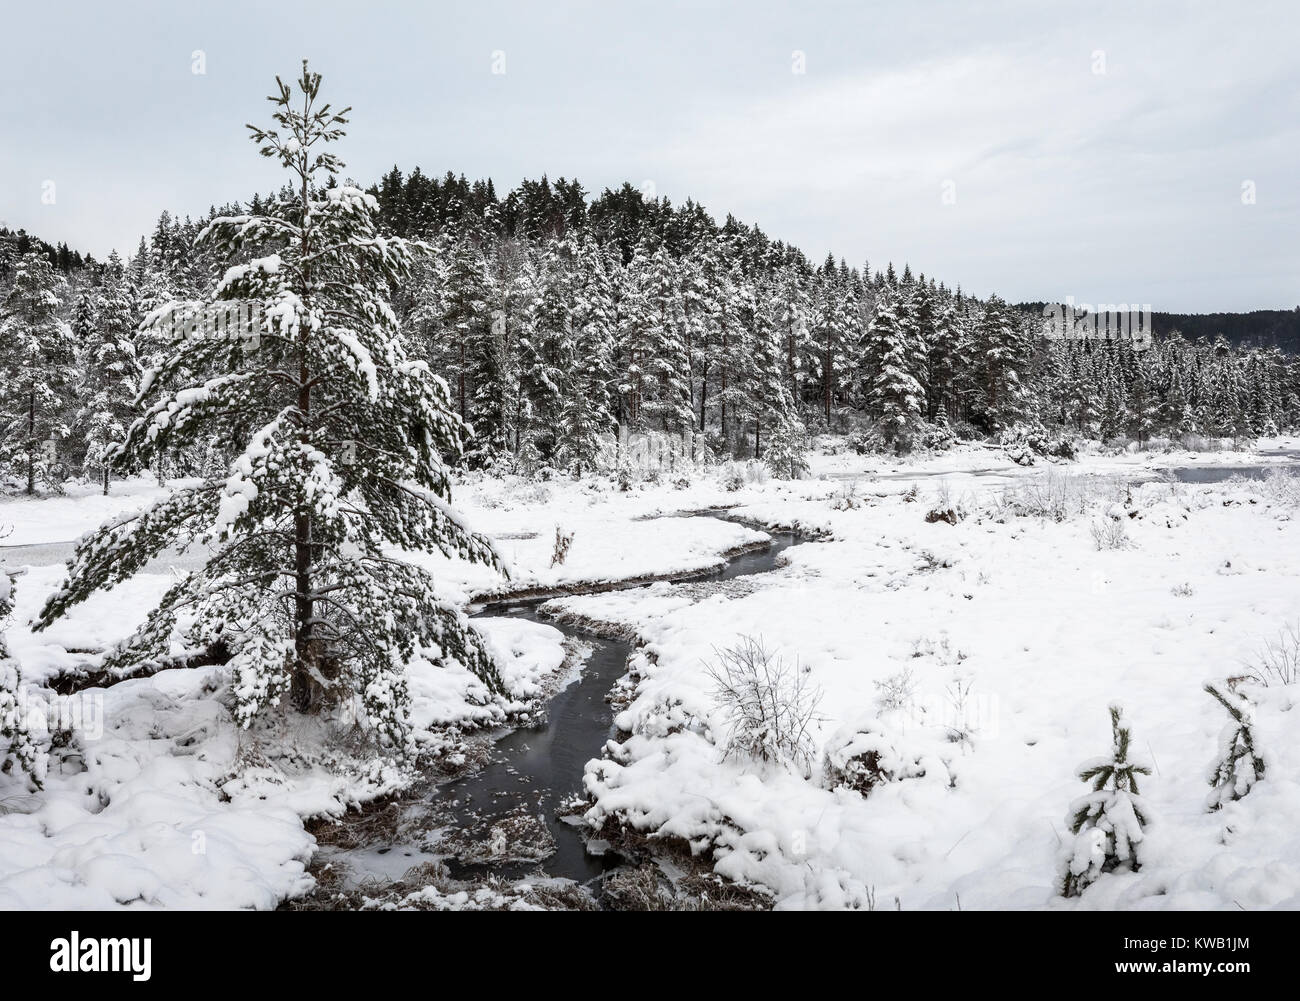 Paisaje invernal, pinos cubiertos de nieve junto a un arroyo, la parte sur de Noruega Foto de stock